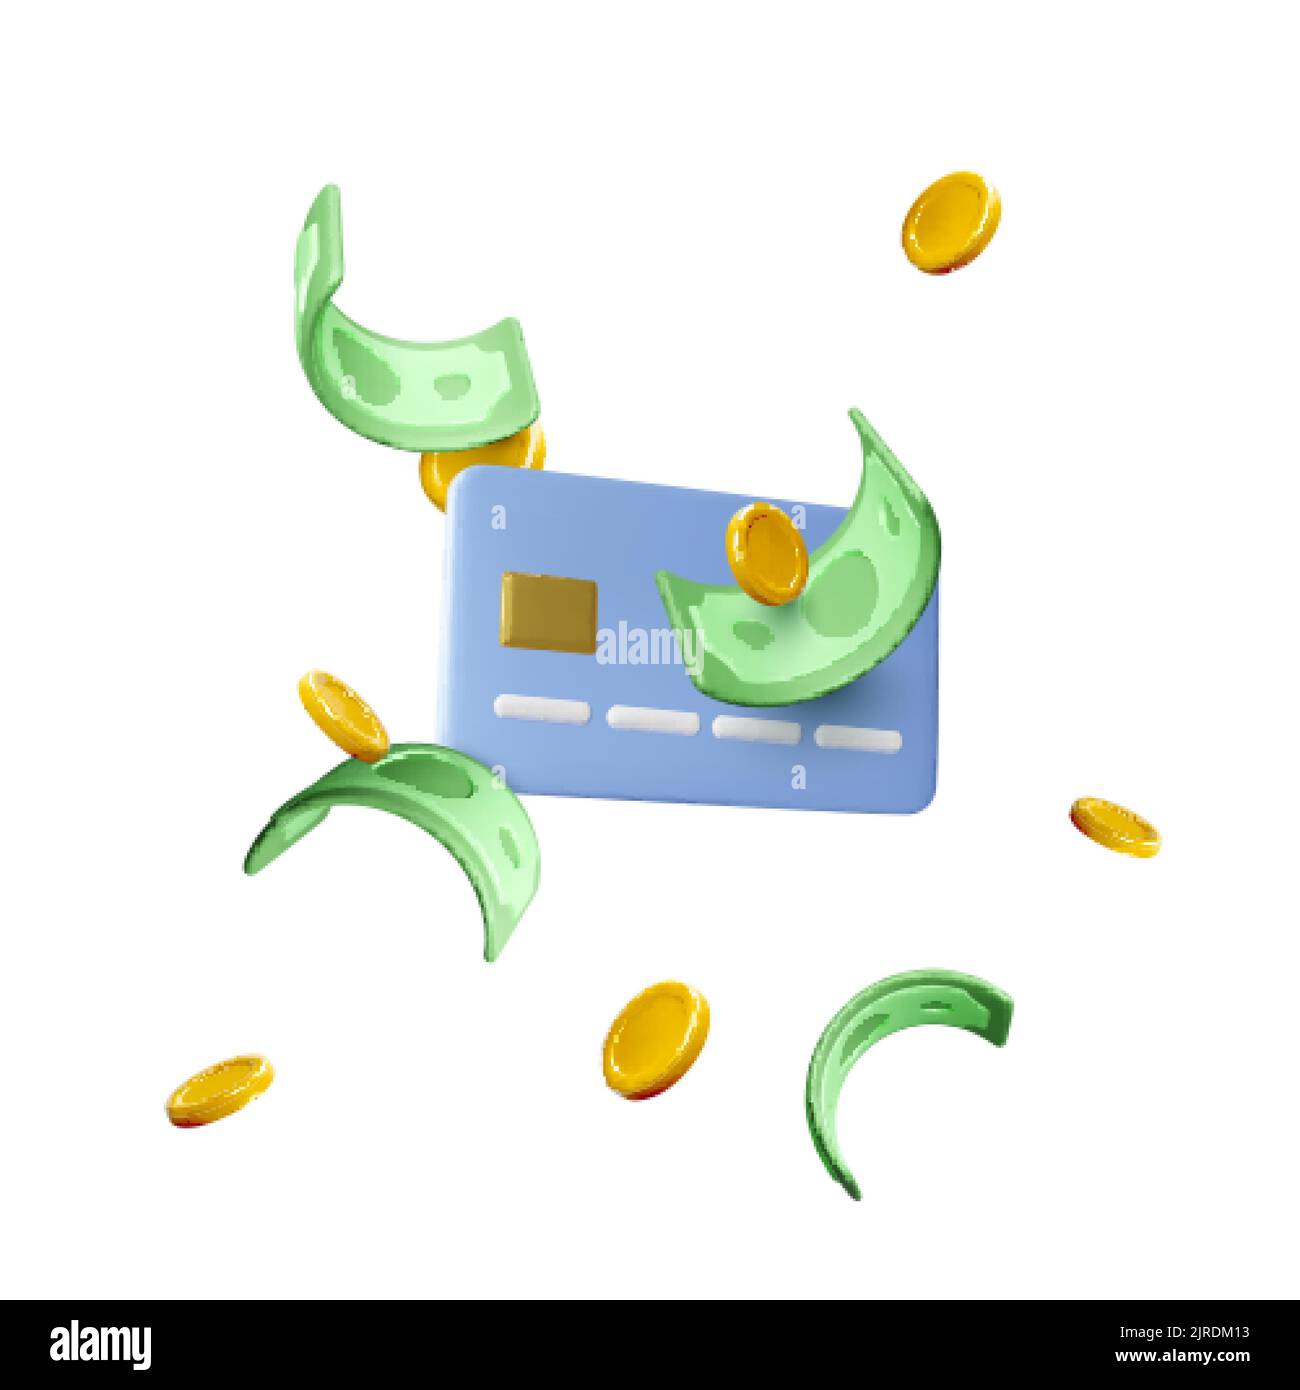 Concept de carte de crédit et d'argent volant. Dollars de papier vert et pièces d'or dans un style de dessin animé réaliste. Échange et réussite commerciale. Illustrateur de vecteur Illustration de Vecteur